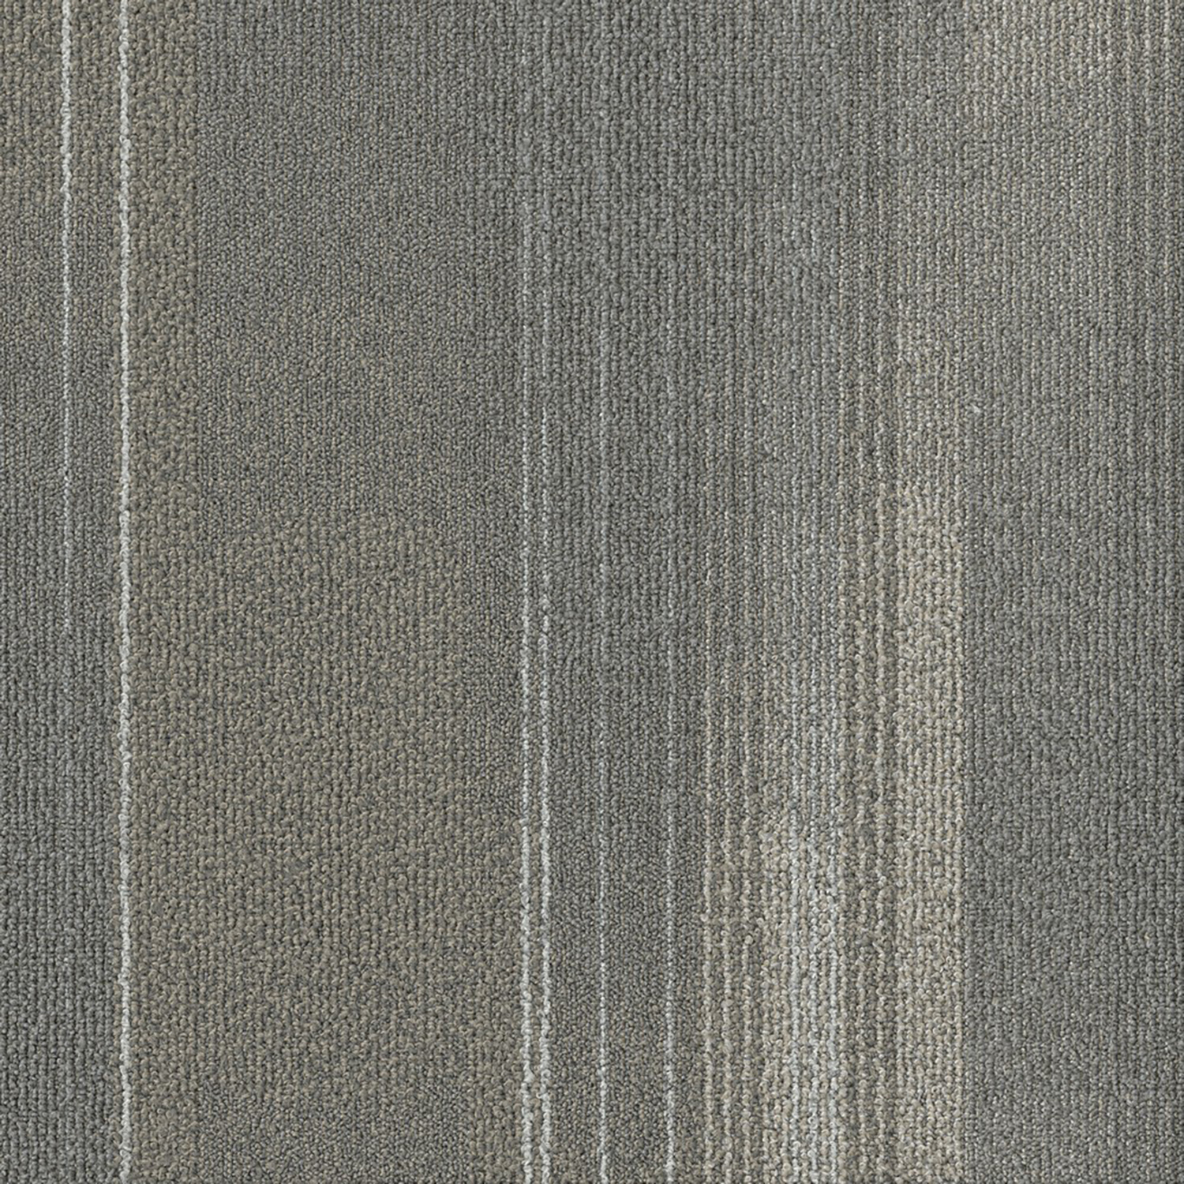 Diversions Carpet Tile